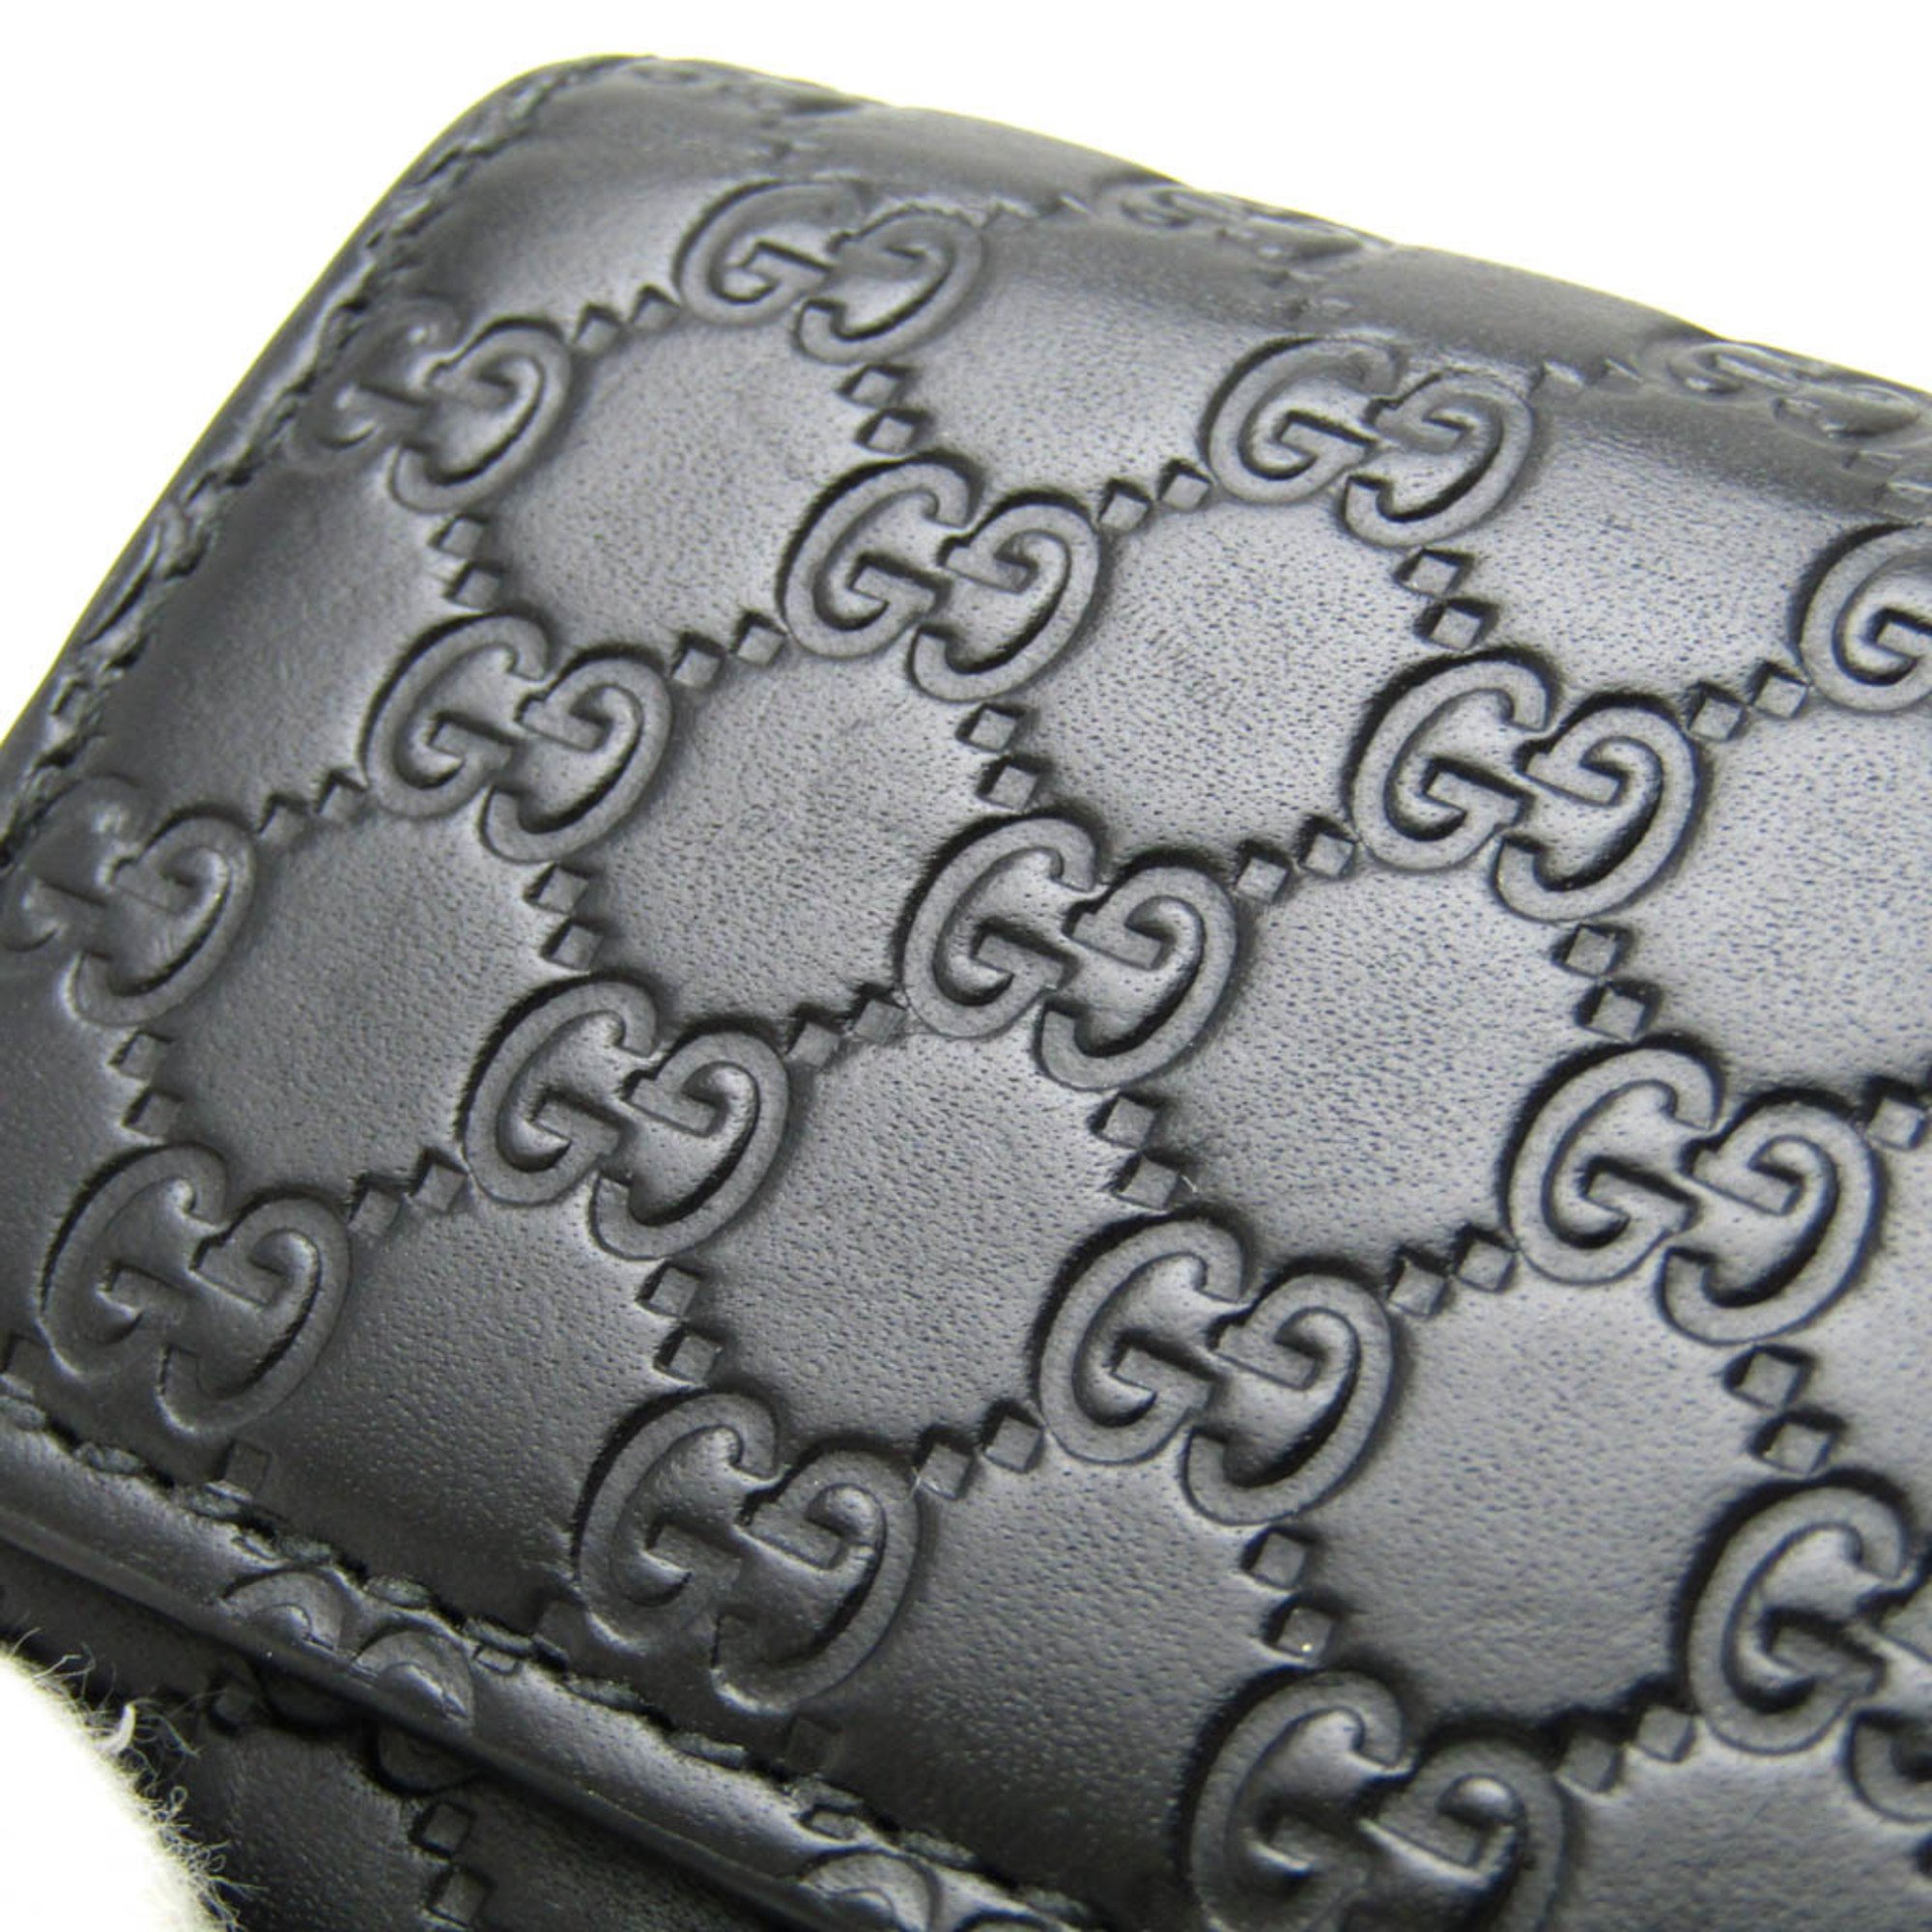 Gucci MicroGuccissima 150402 Women,Men Leather Key Case Black